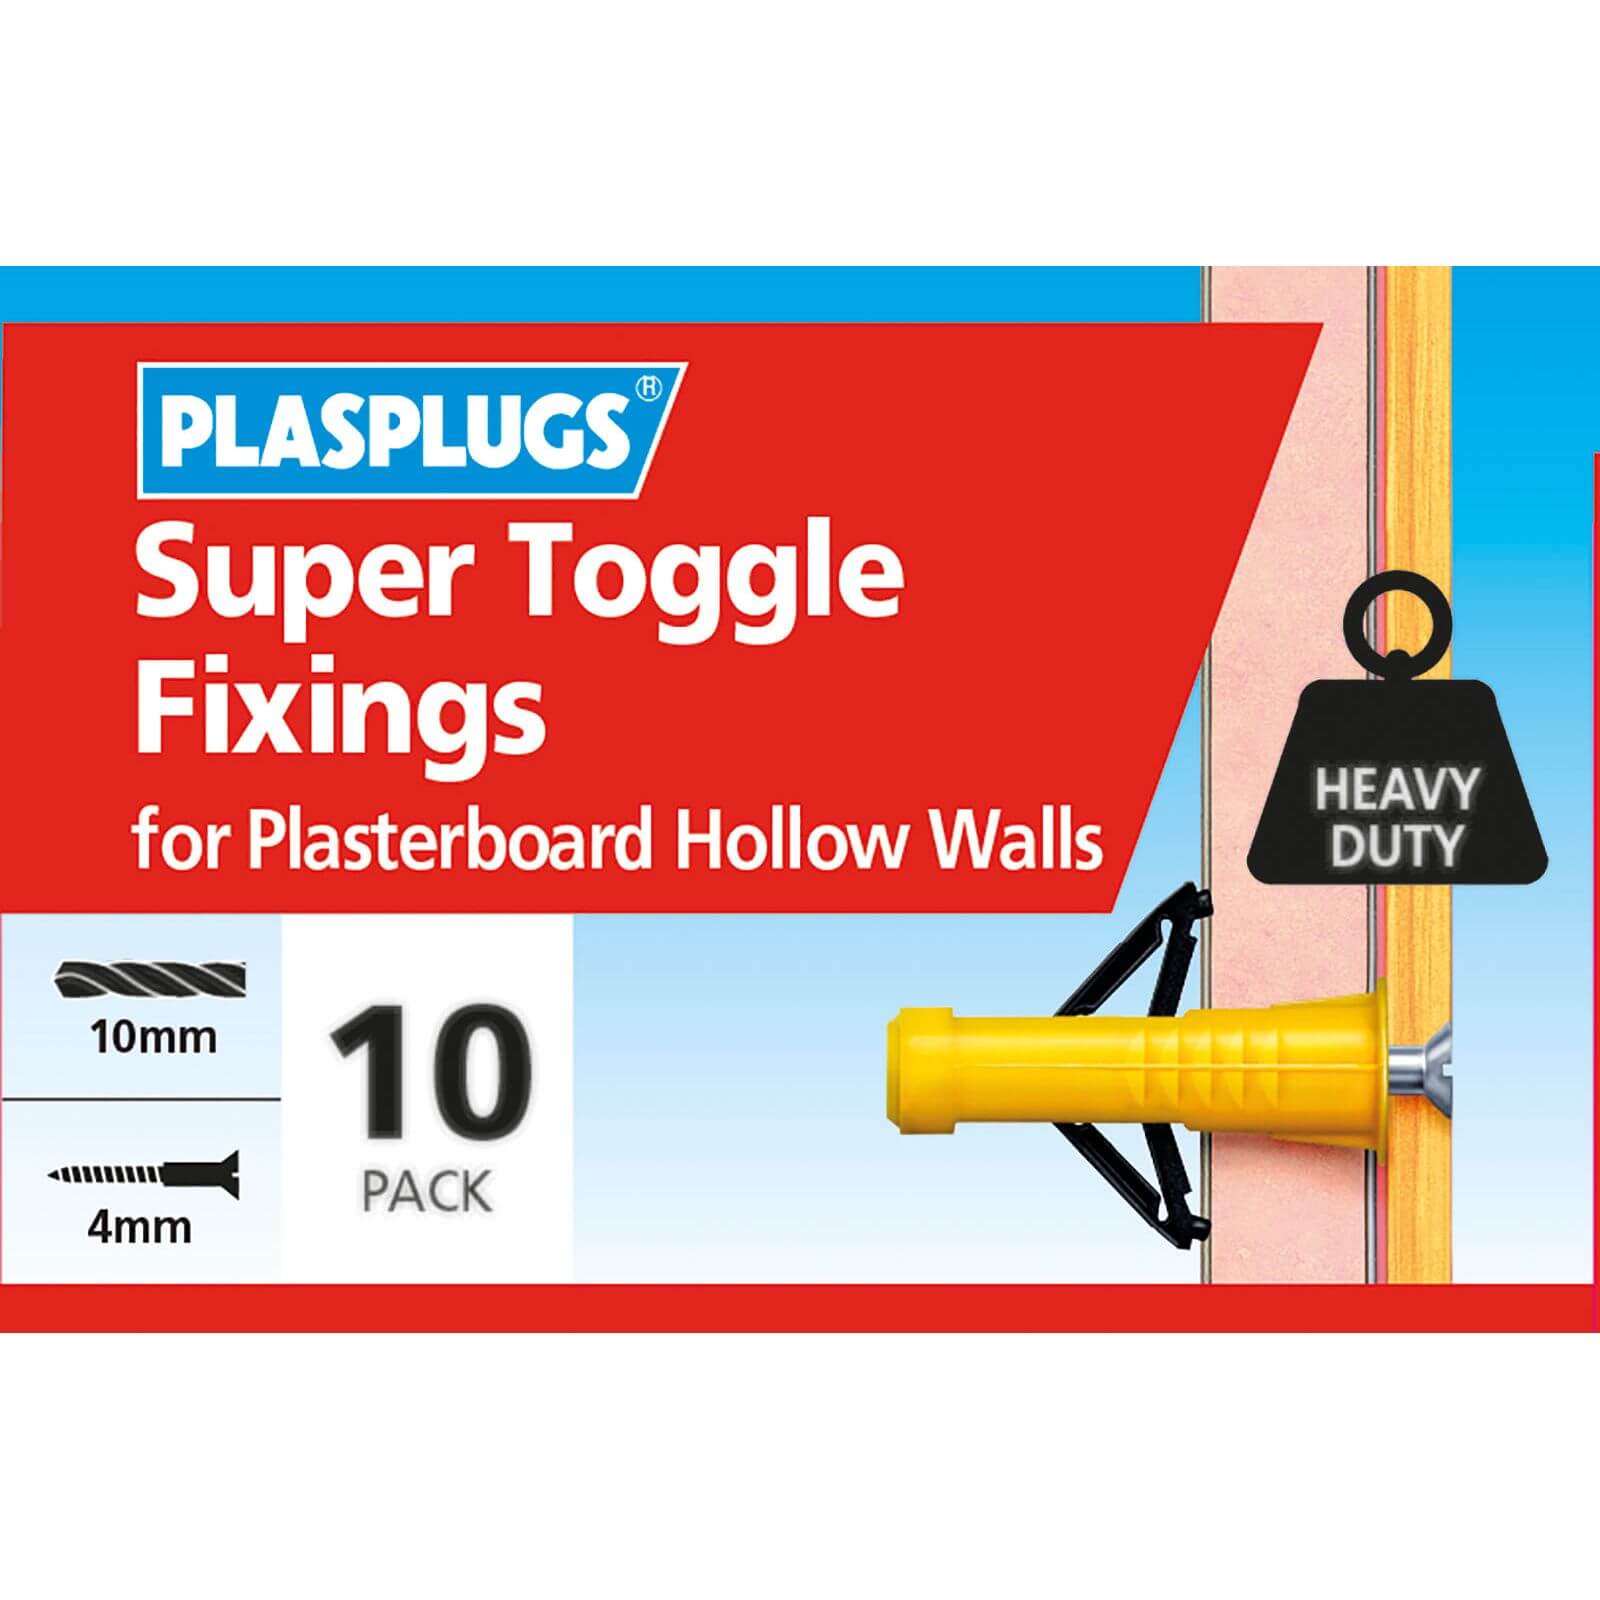 Plasplugs Super Toggle x 10